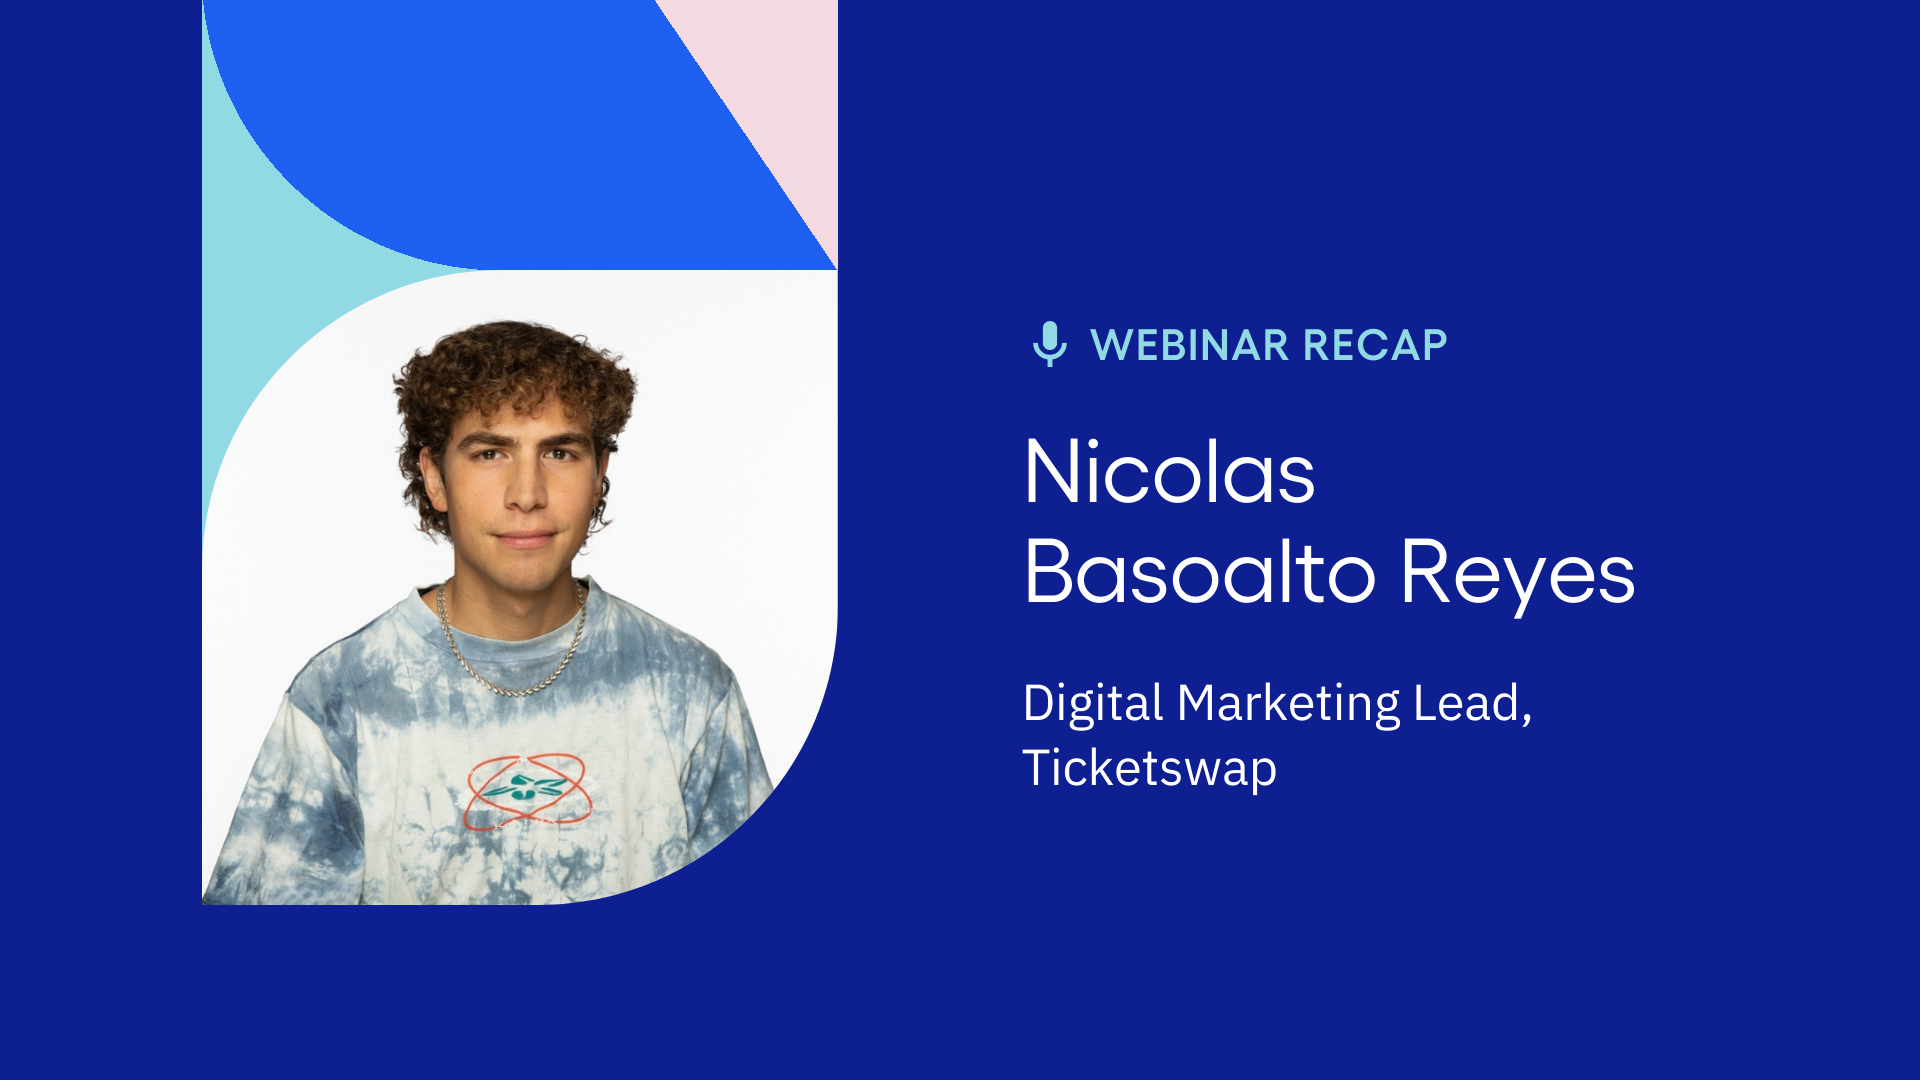 Webinar recap with Nicolas Basoalto, TicketSwap